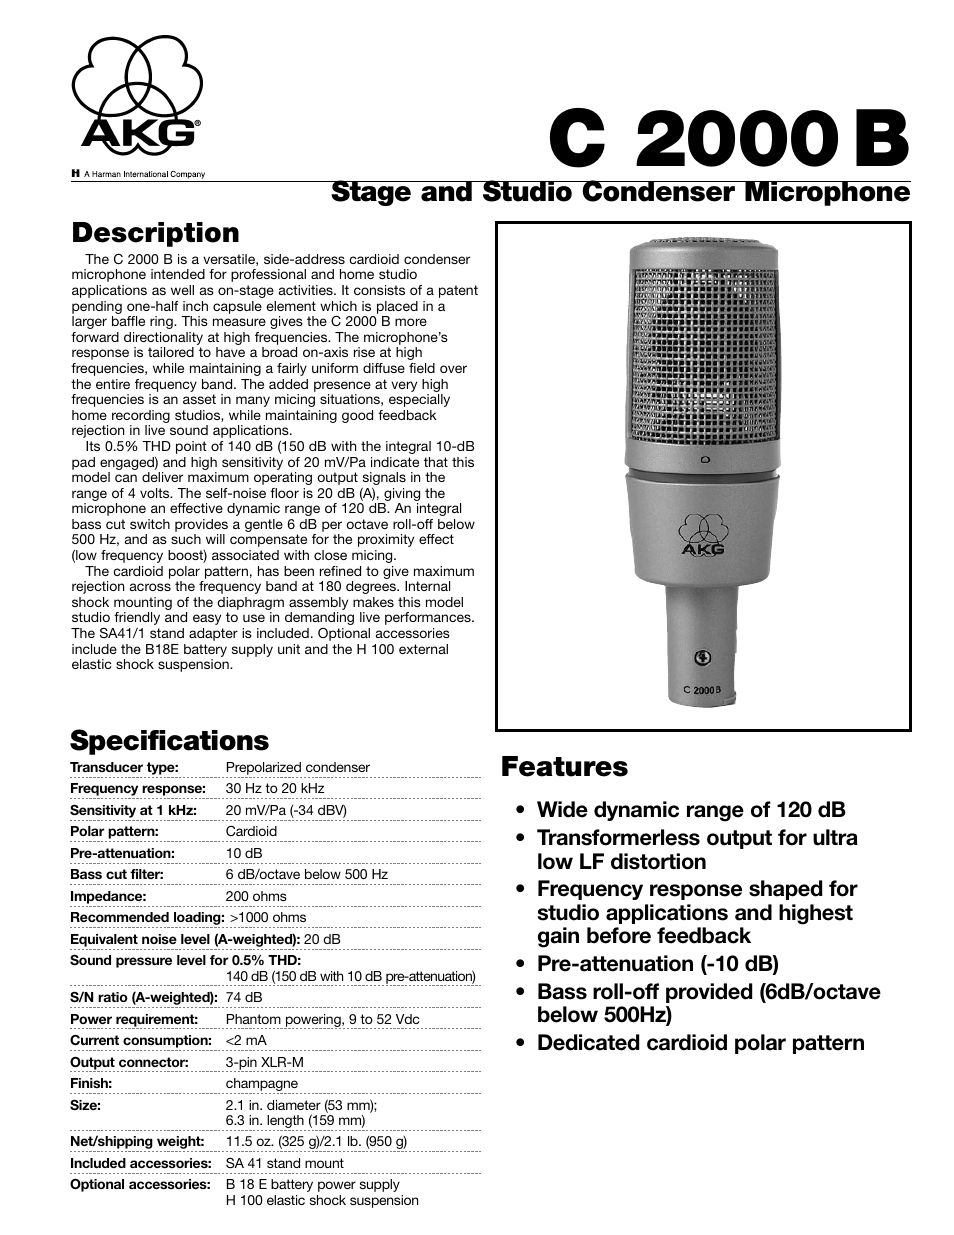 AKG Acoustics C 2000 B User Manual | 2 pages